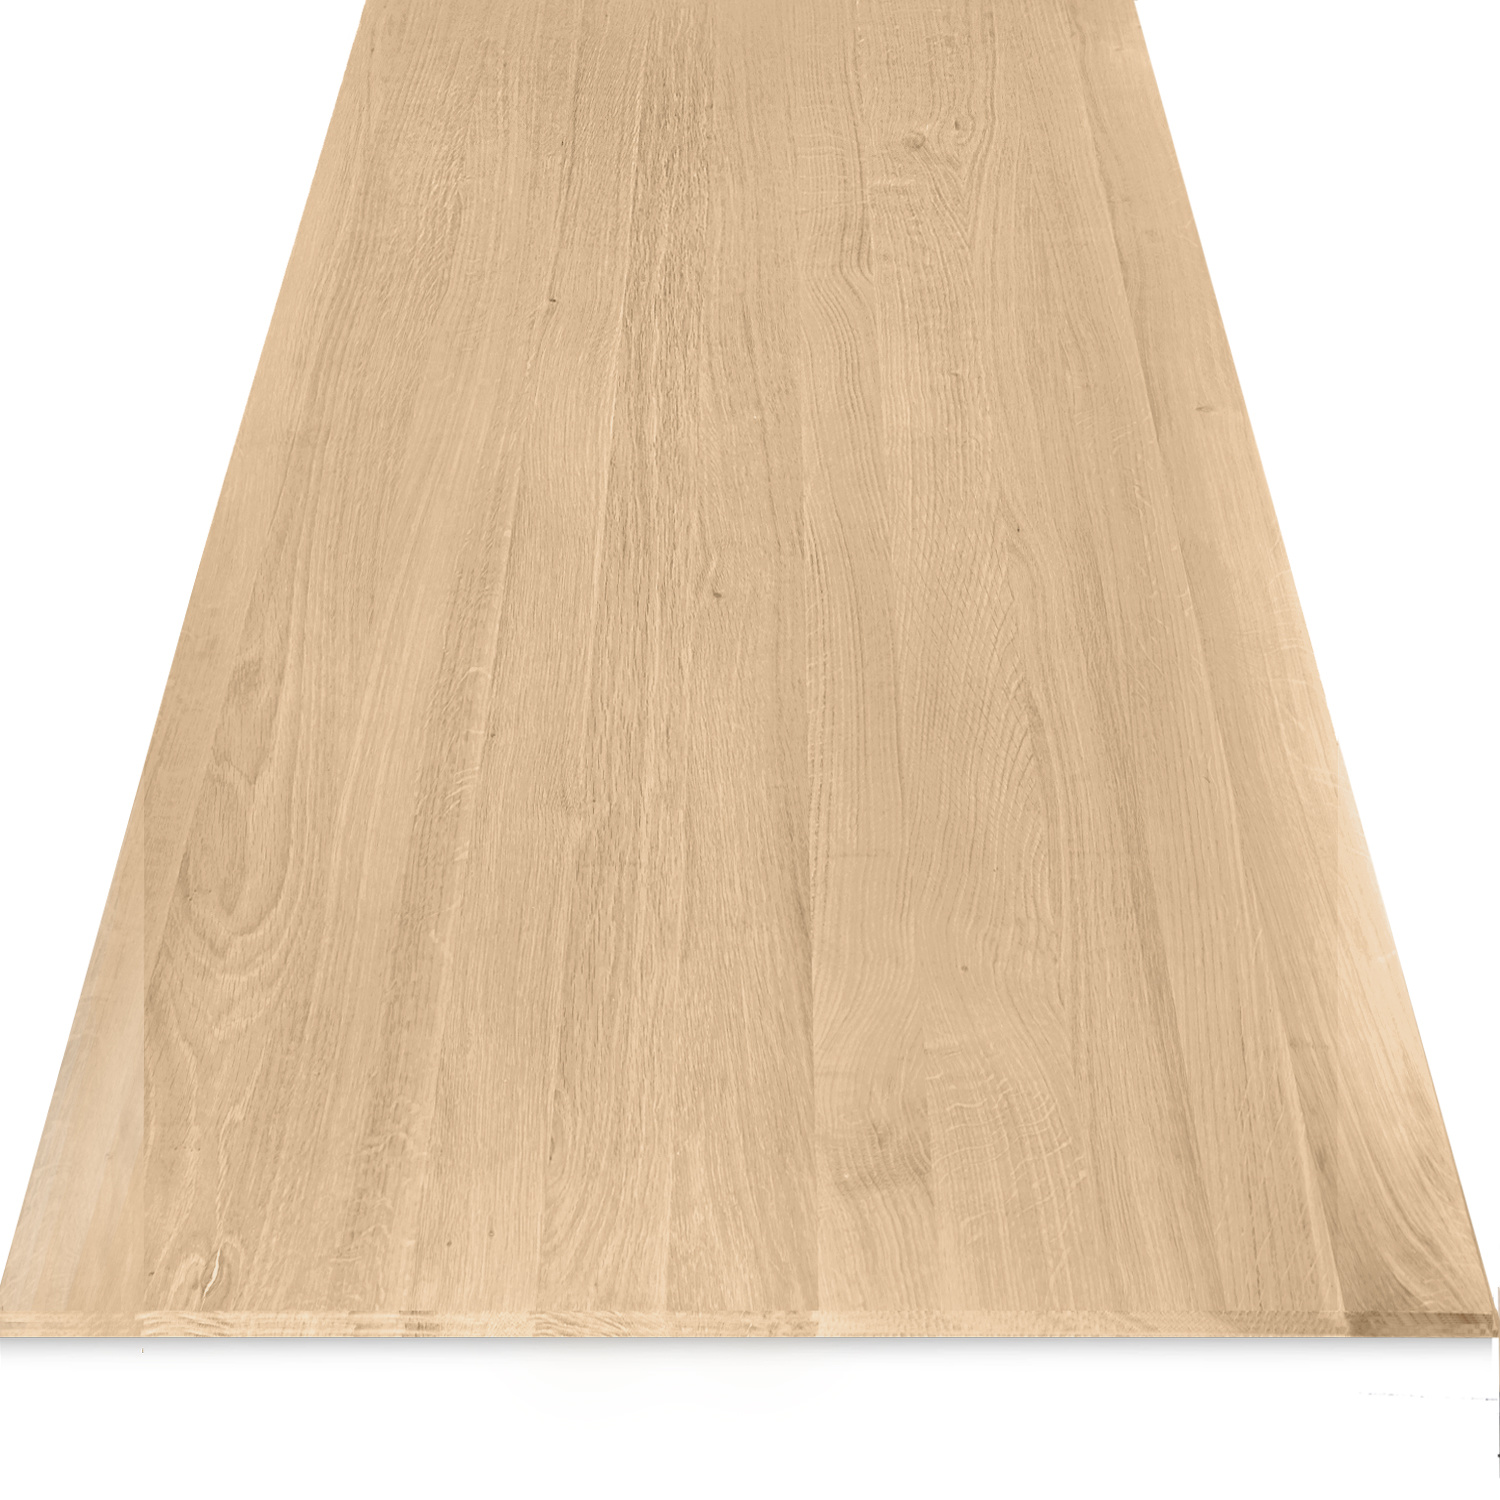  Eiken tafelblad foutvrij verjongd - op maat - 3 cm dik (1-laag) - met verjongde rand - foutvrij Europees eikenhout - verlijmd kd 8-12% - 50-120x50-350 cm